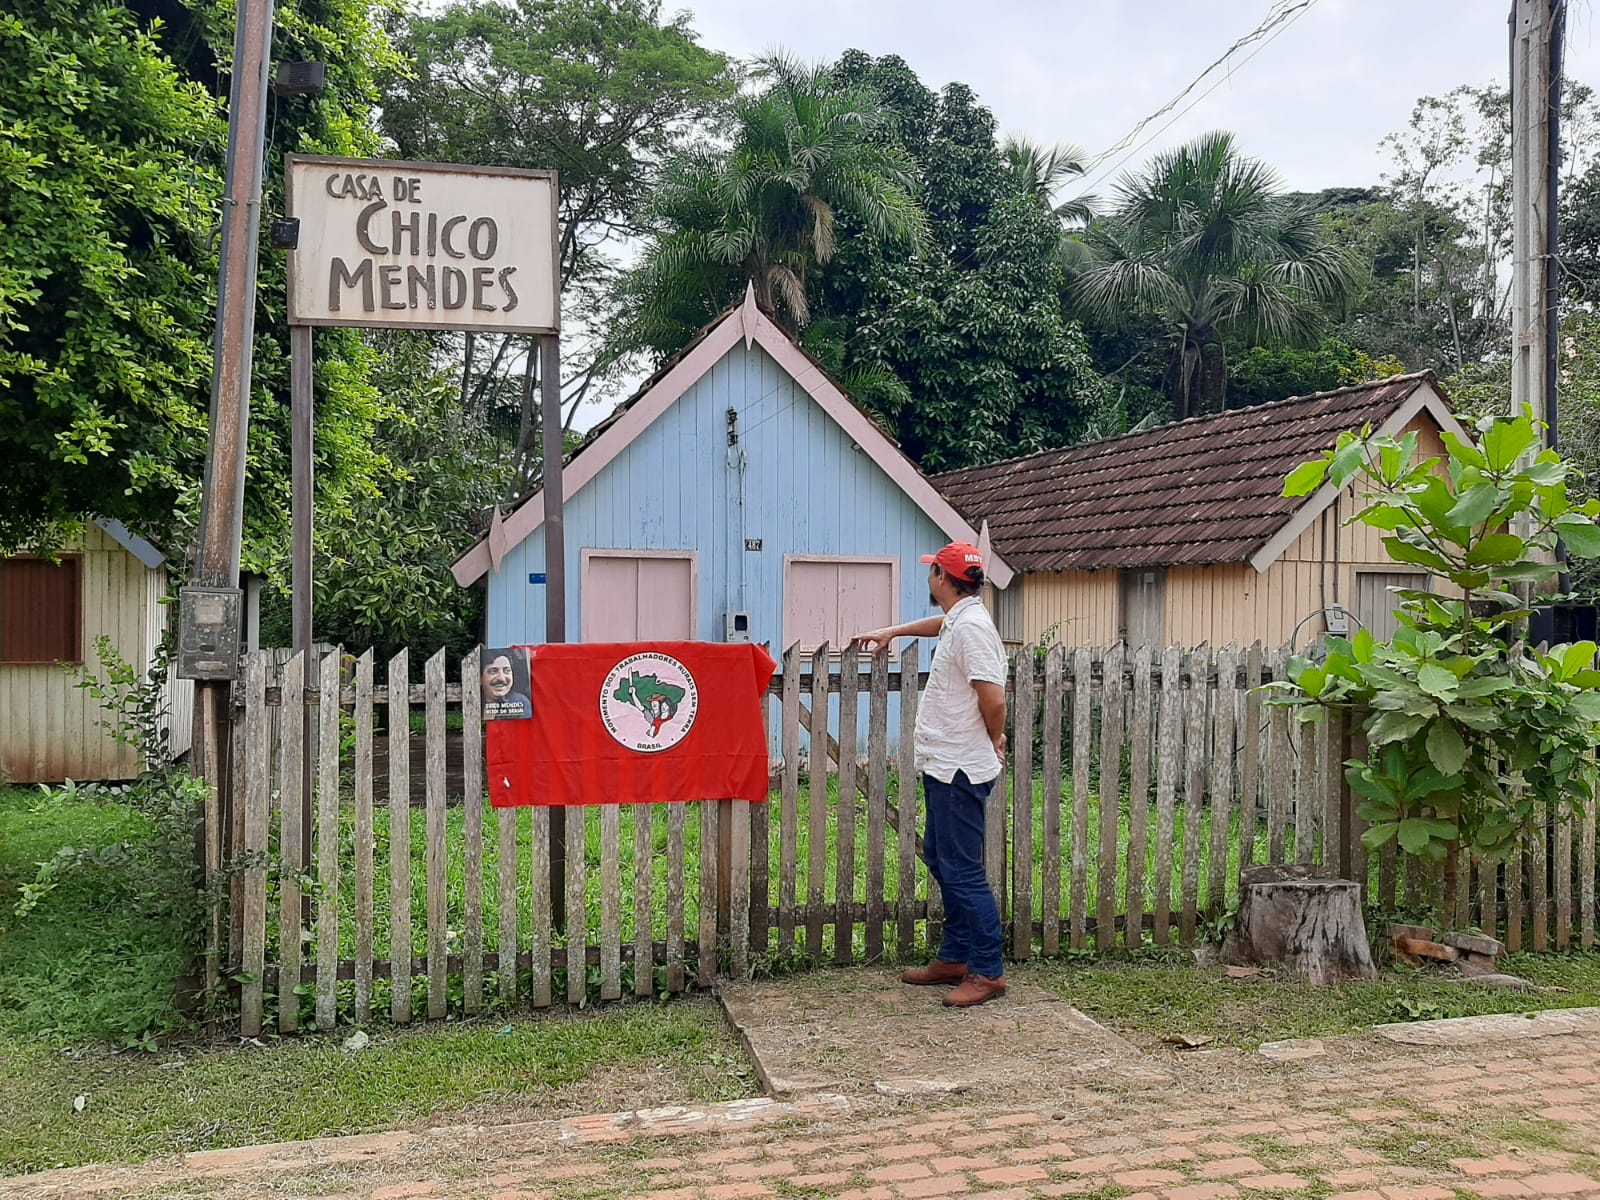 Acre vive cotidiano de tensão agrária 25 anos após morte de Chico Mendes